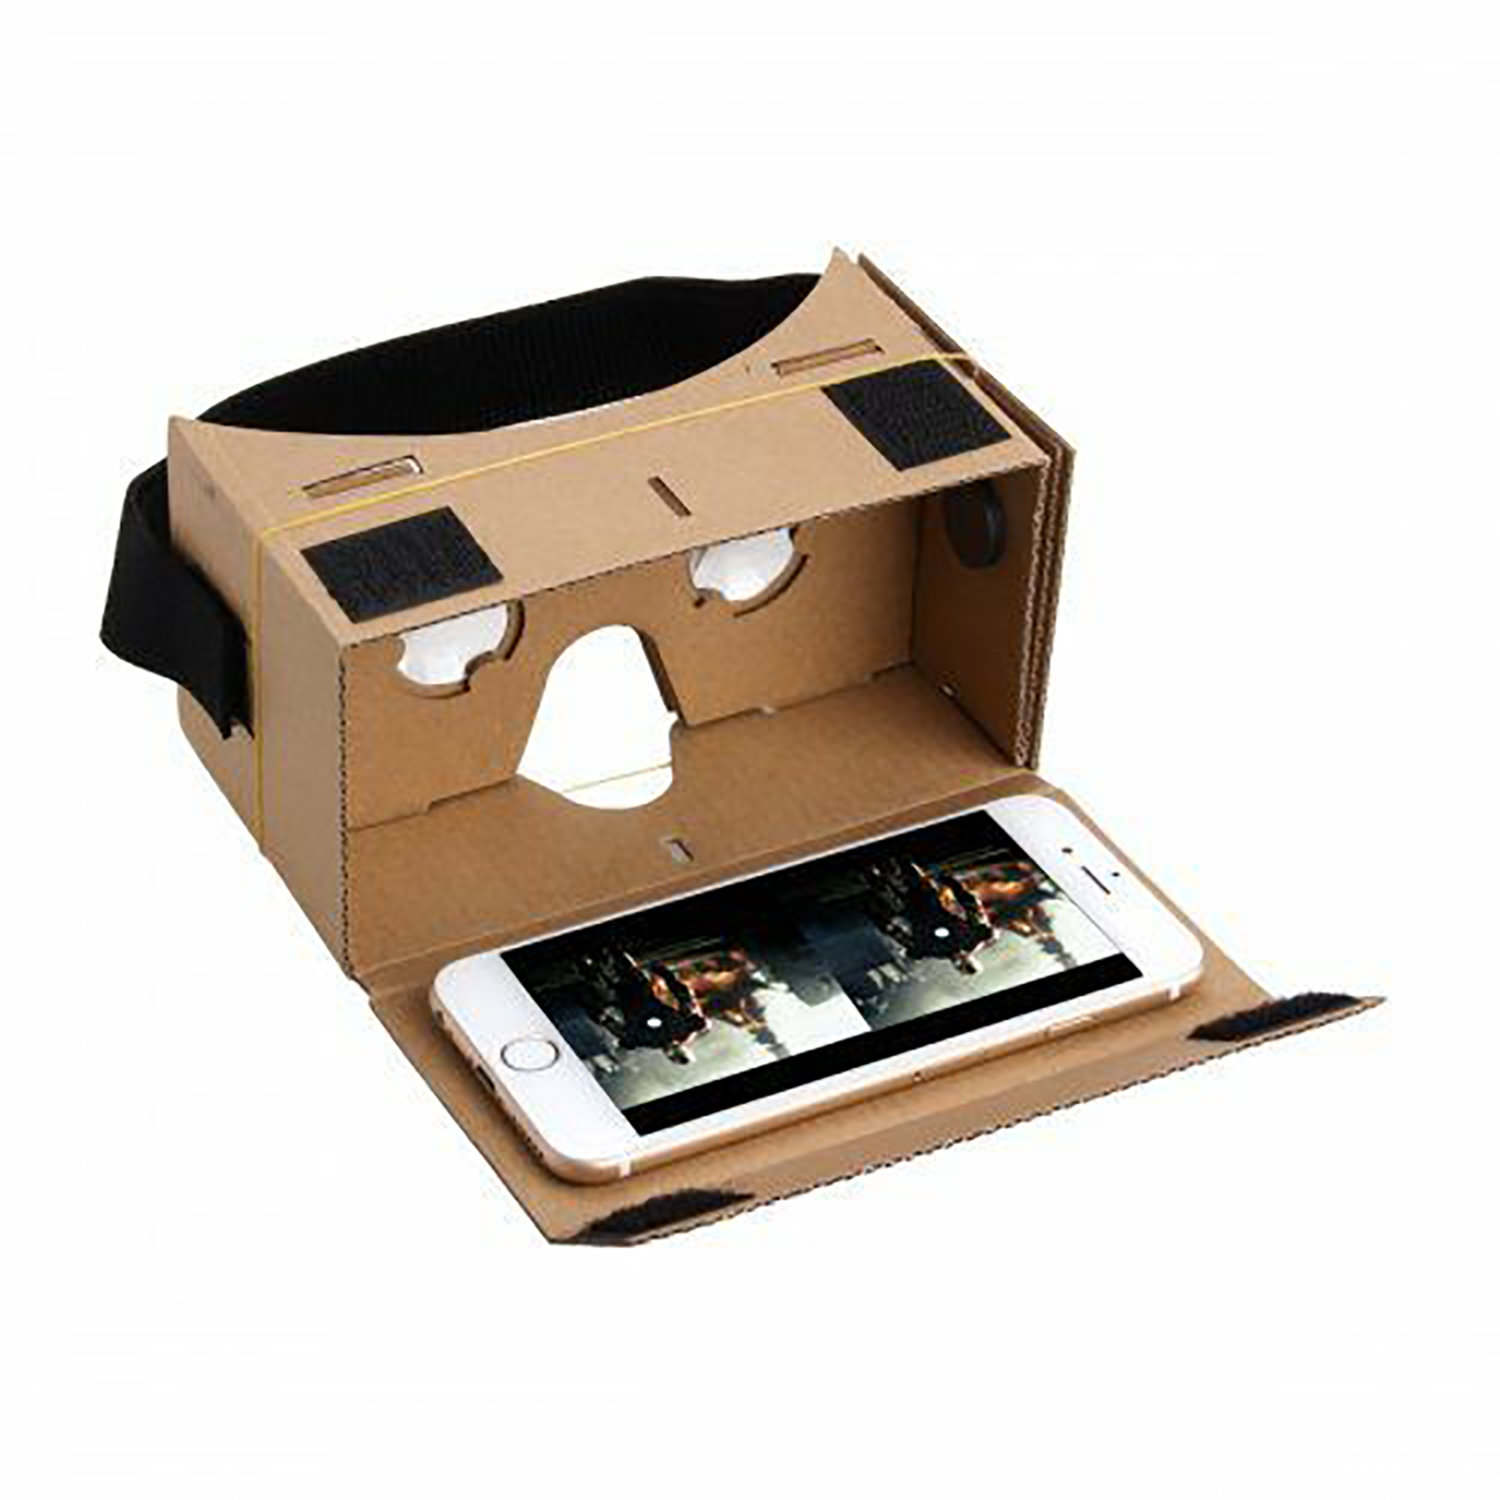 Google Cardboard VR Headset Full Kit Magnet VR Games For iPhone 4 5 6 Plus BT 